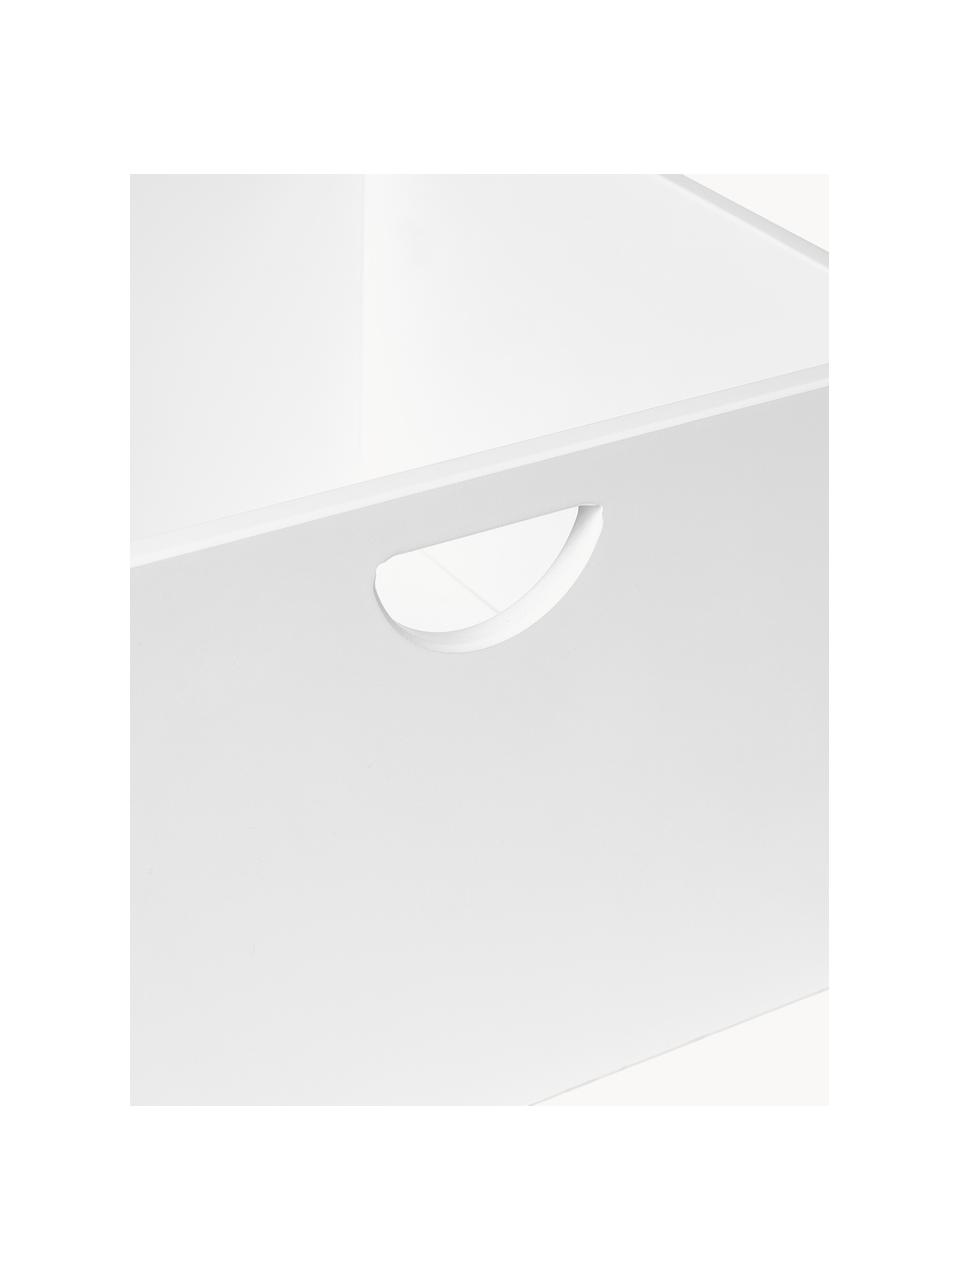 Wkład do szafki Nunila, 2 szt., Płyta pilśniowa średniej gęstości (MDF) lakierowana, Biały, S 36 x W 25 cm